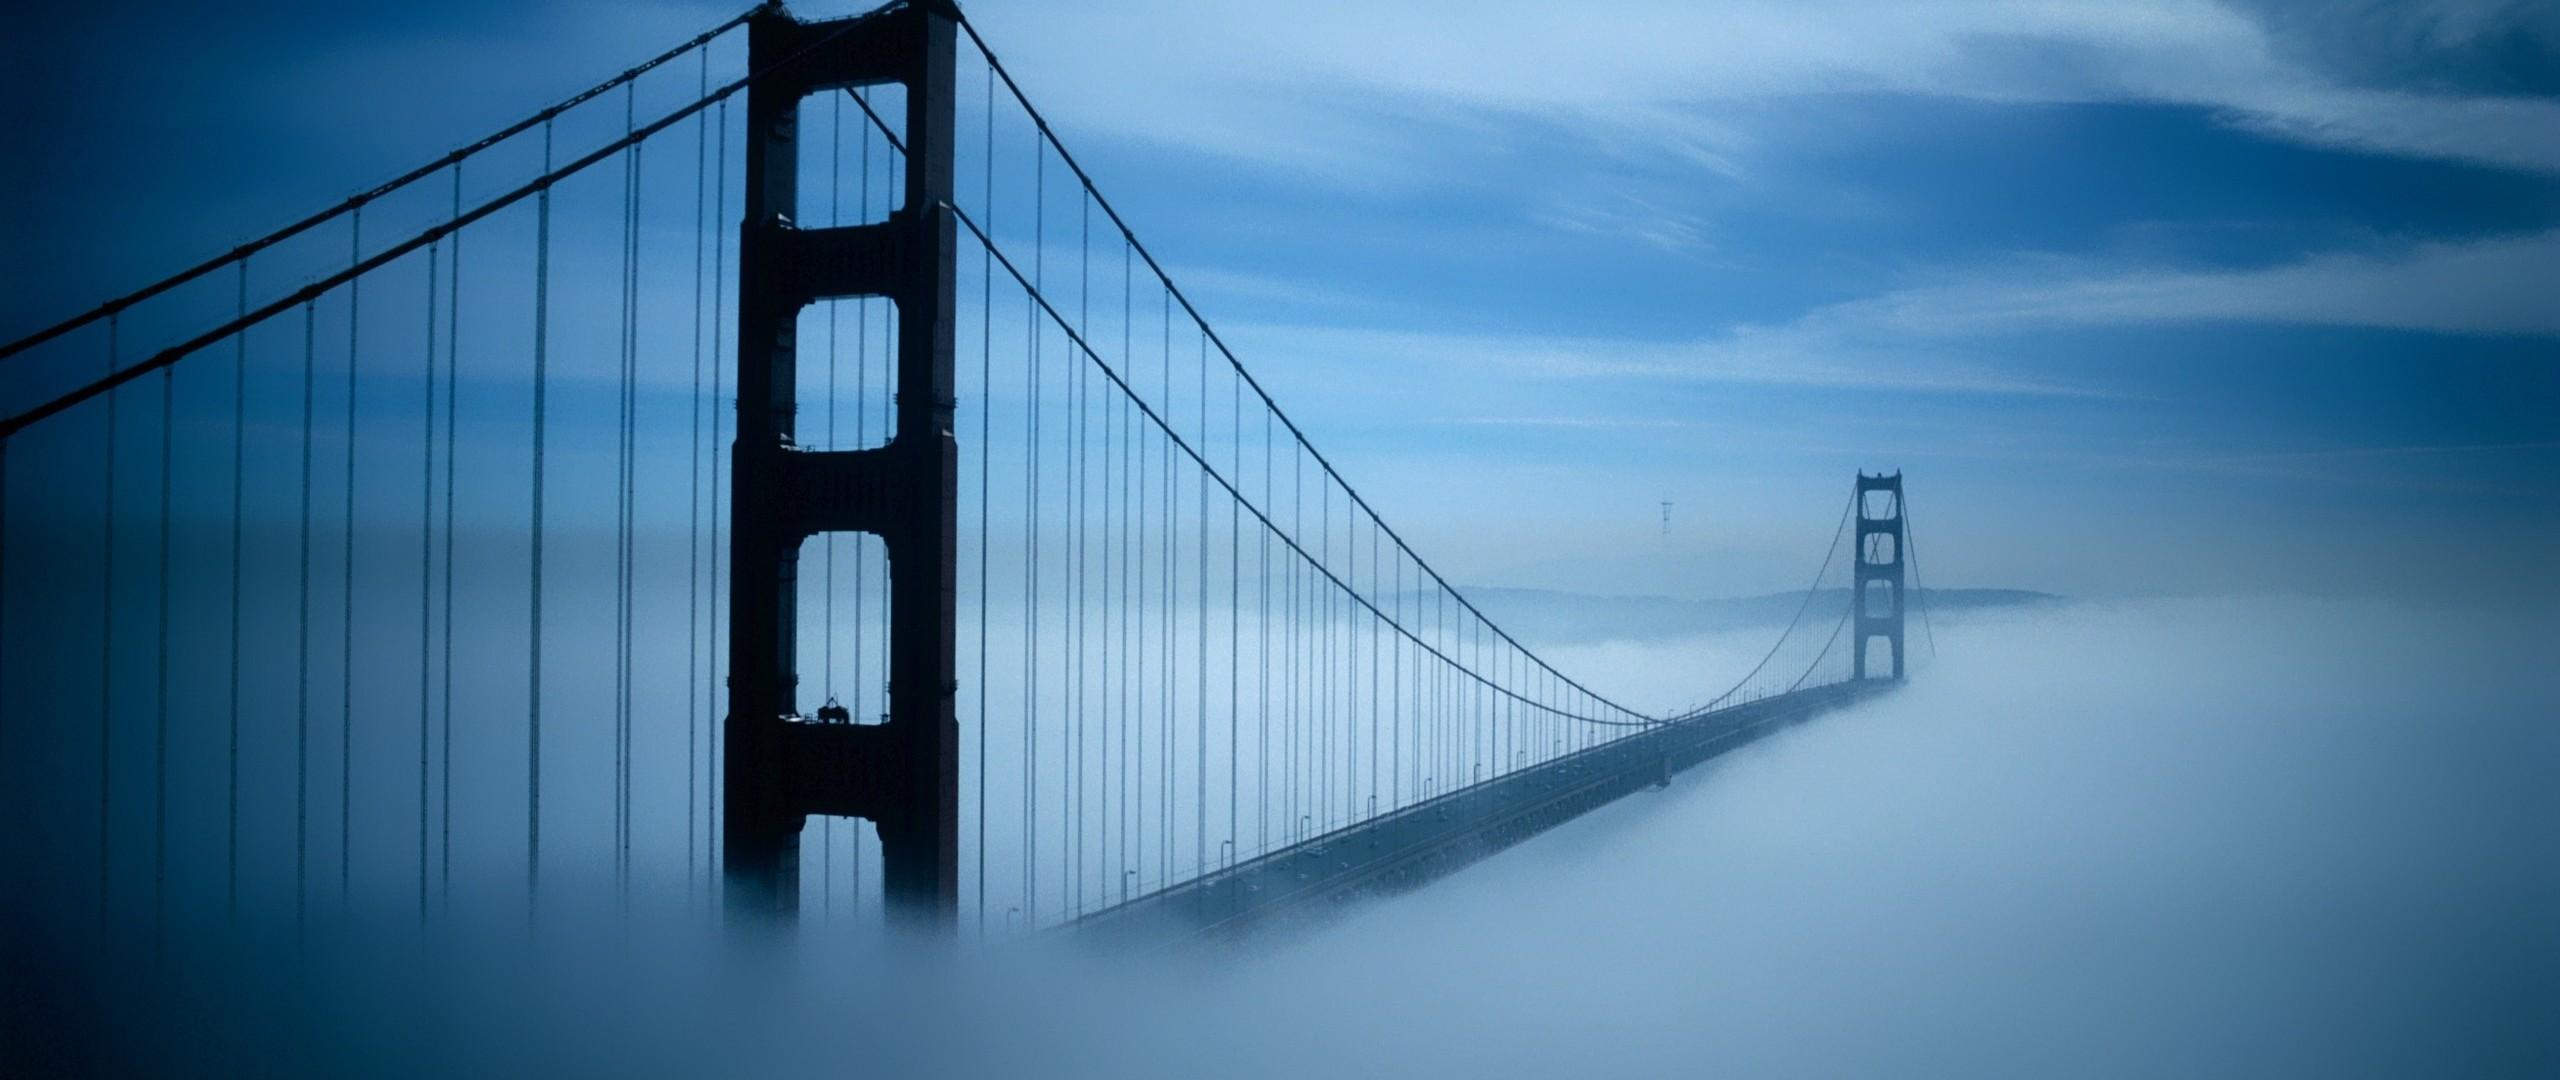 Golden Gate Bridge San Francisco 2560x1080